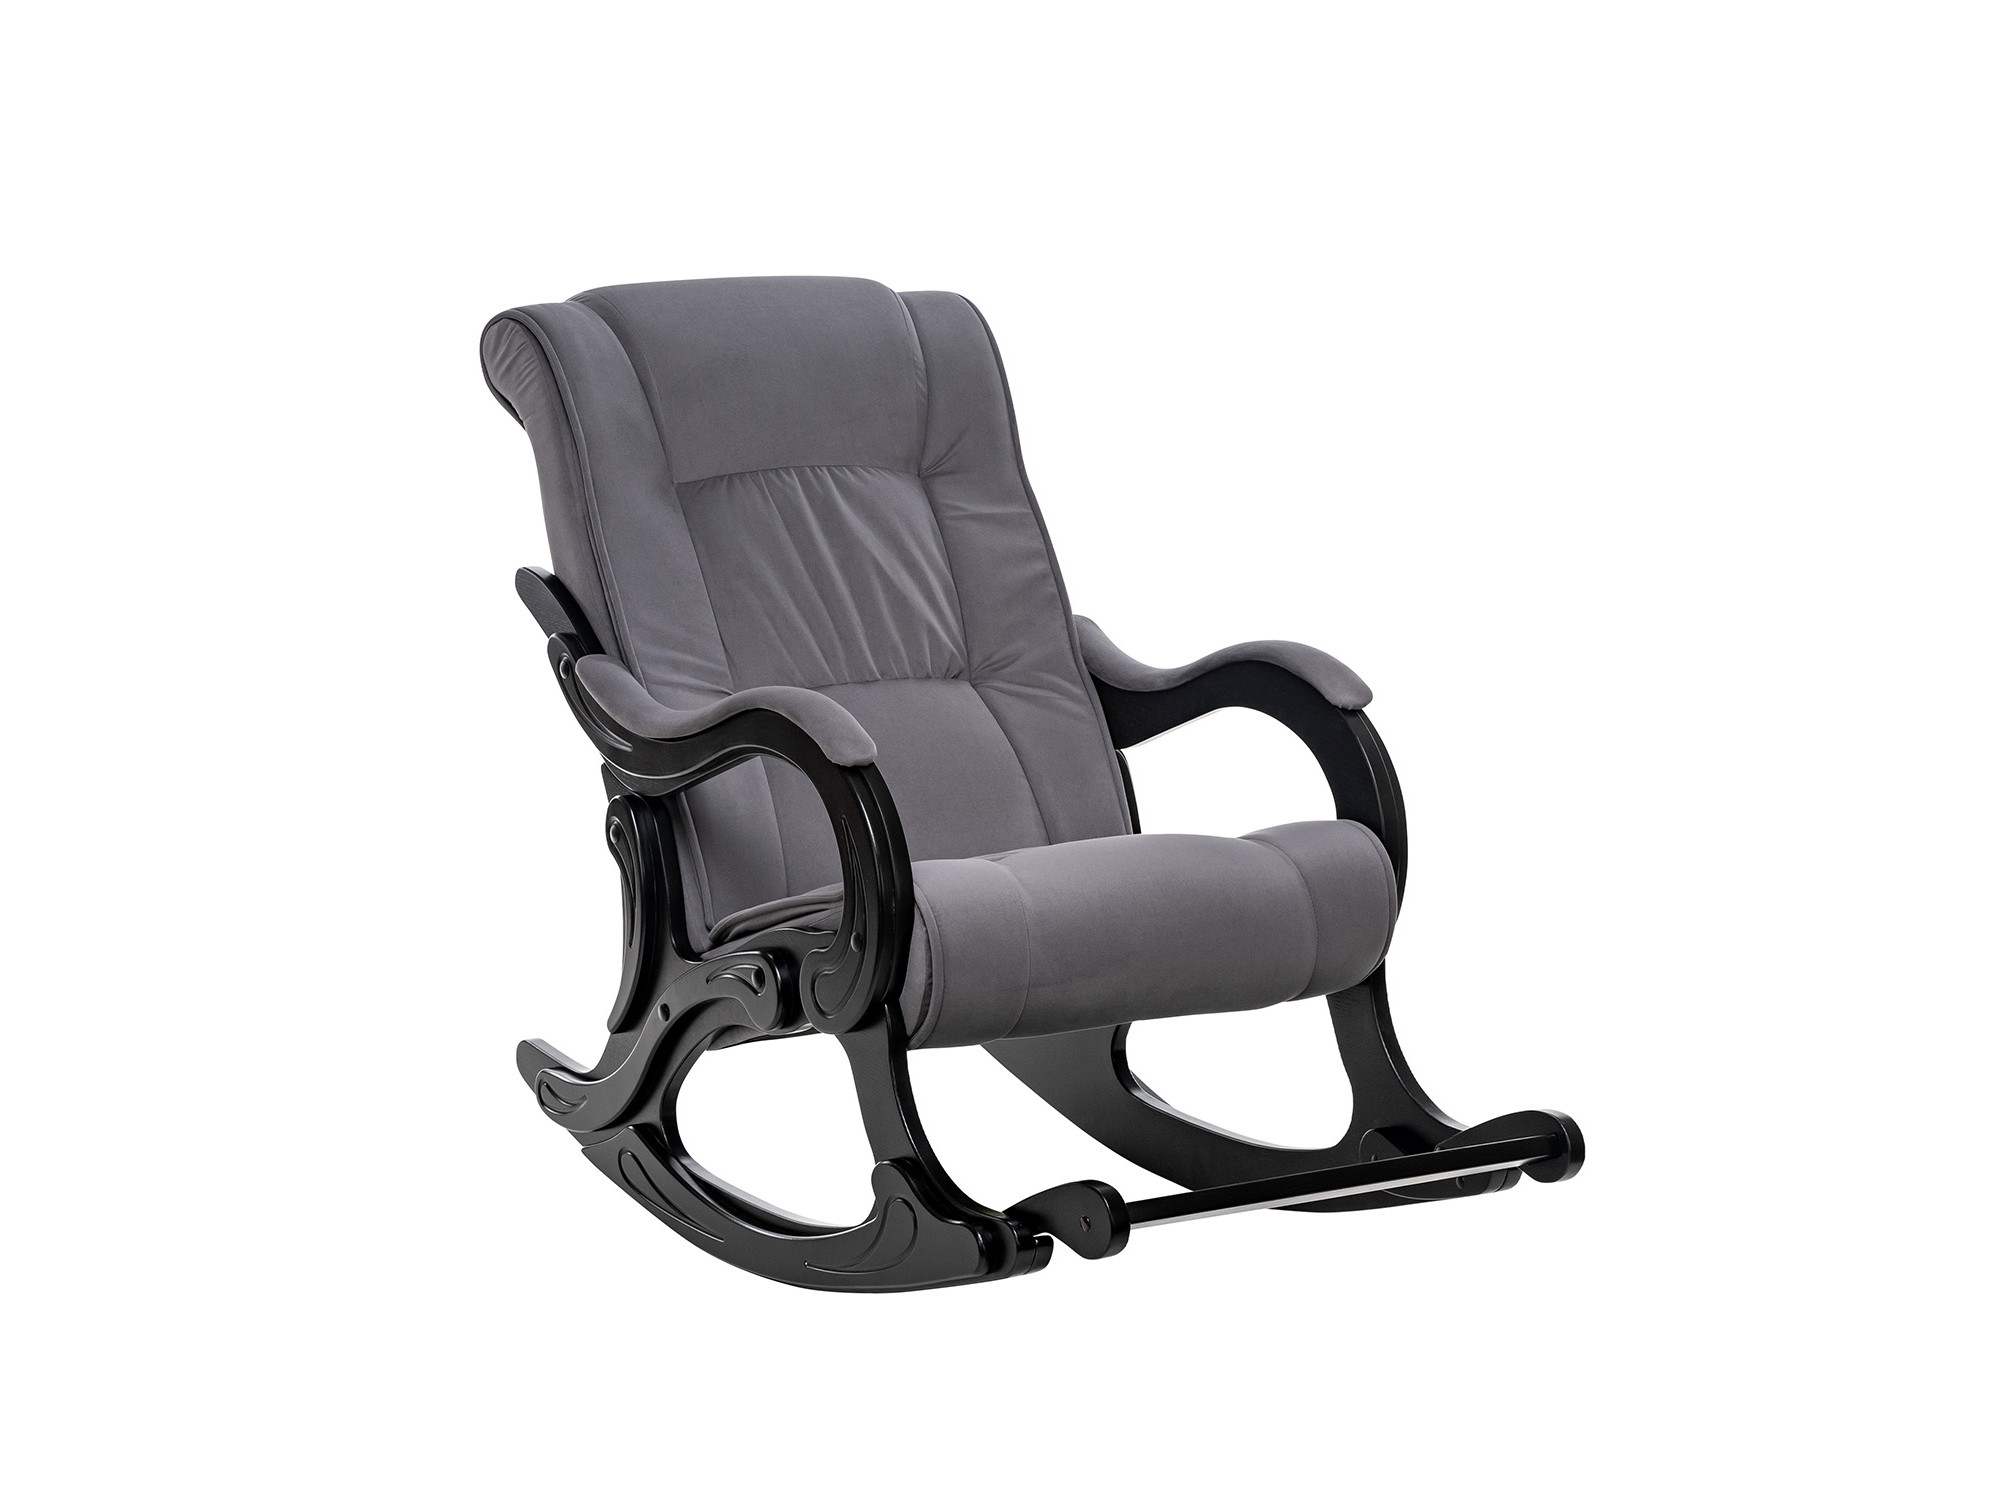 Кресло-качалка Модель 77 MebelVia V32 серый, Ткань Велюр, Фанера, шпон, лак кресло качалка модель 67 венге ткань v 43 mebelvia венге ткань велюр фанера